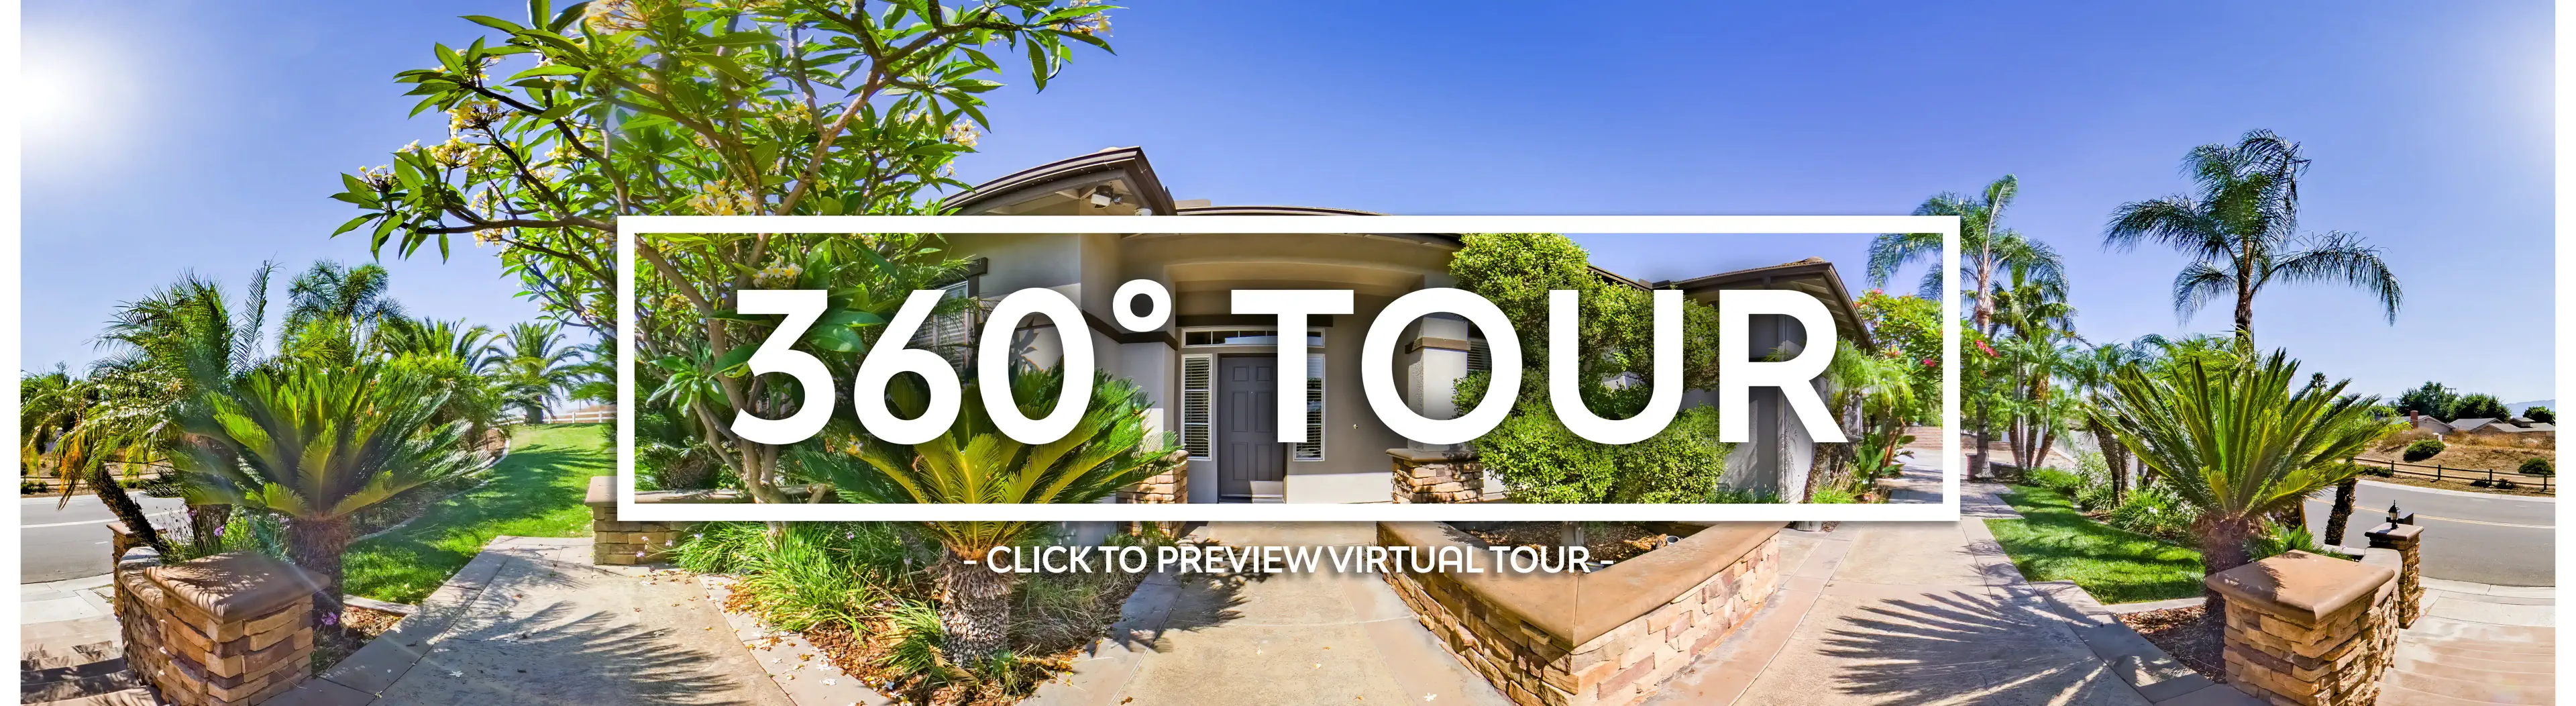 360 Virtual Tour - ADDRESS